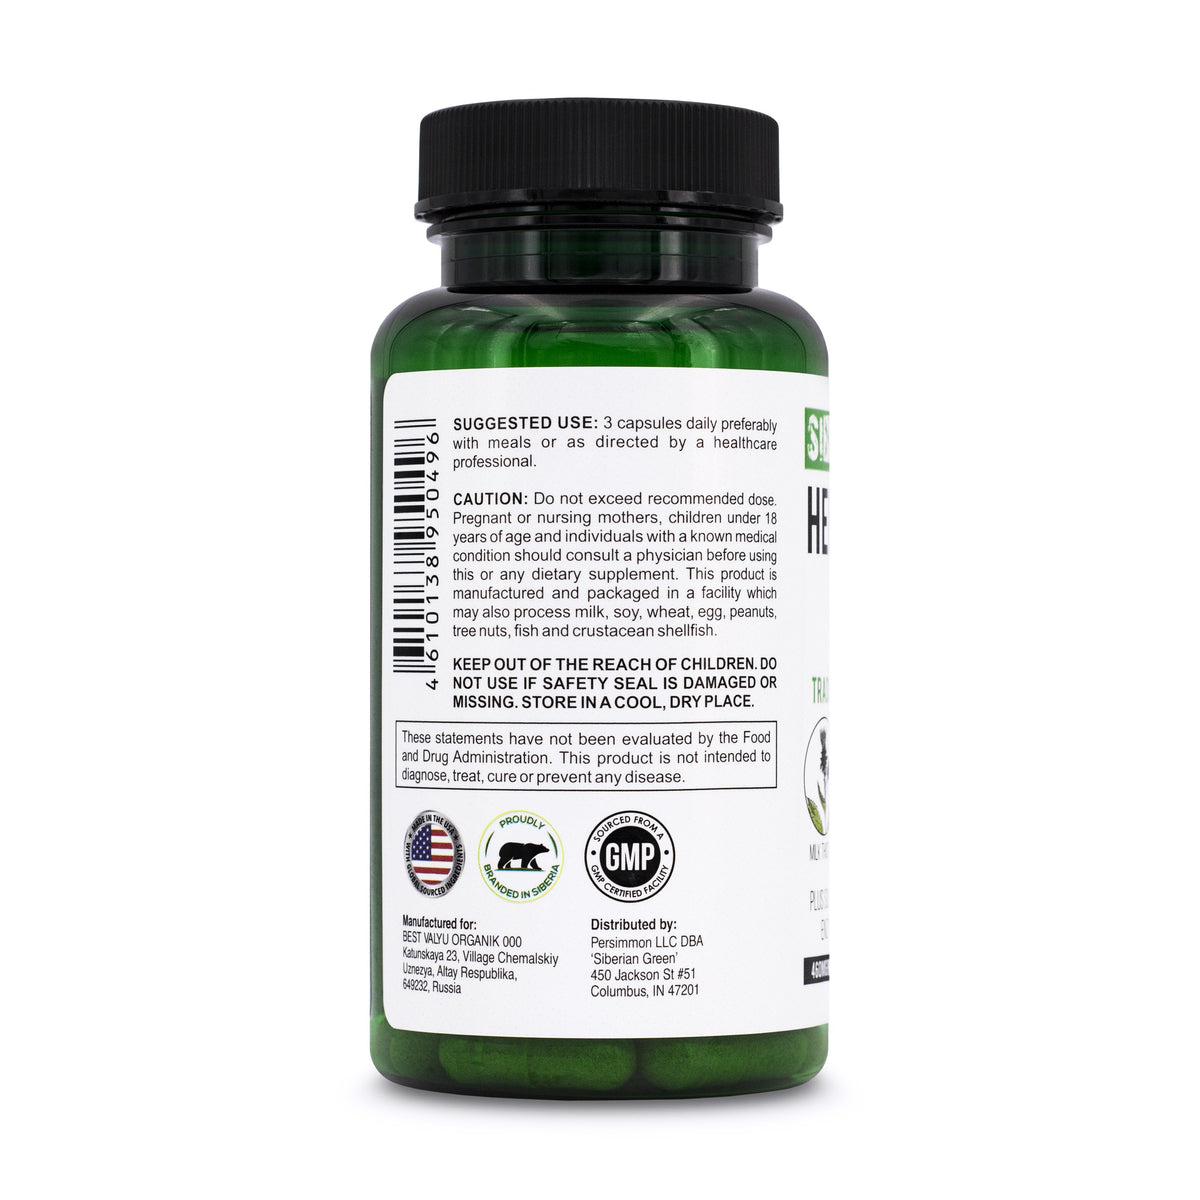 Herbal Liver Detox Siberian Green 60 Caps - Chardon Marie Artichaut Pissenlit